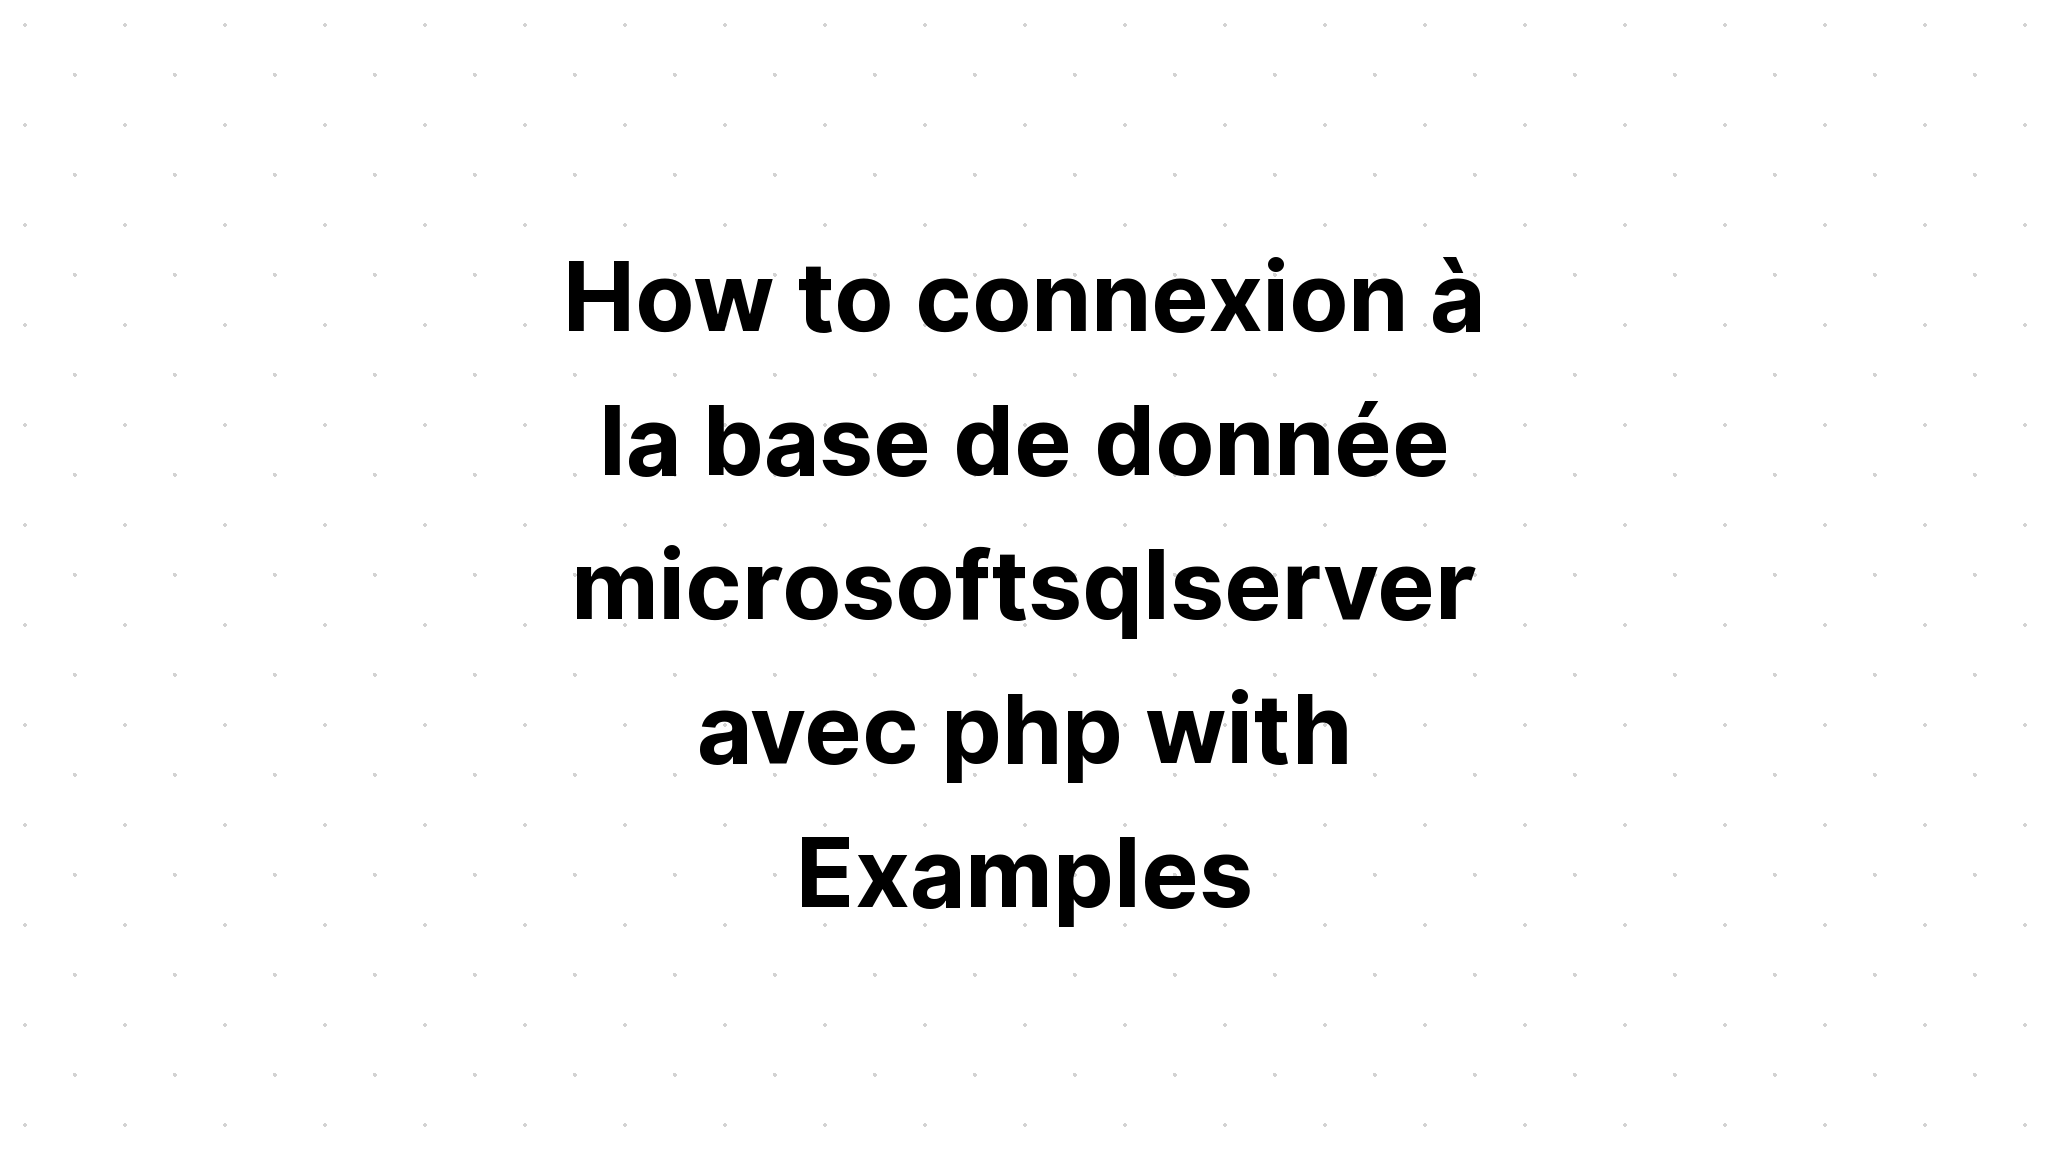 Cách kết nối với cơ sở của donnee microsoftsqlserver avec php với các ví dụ